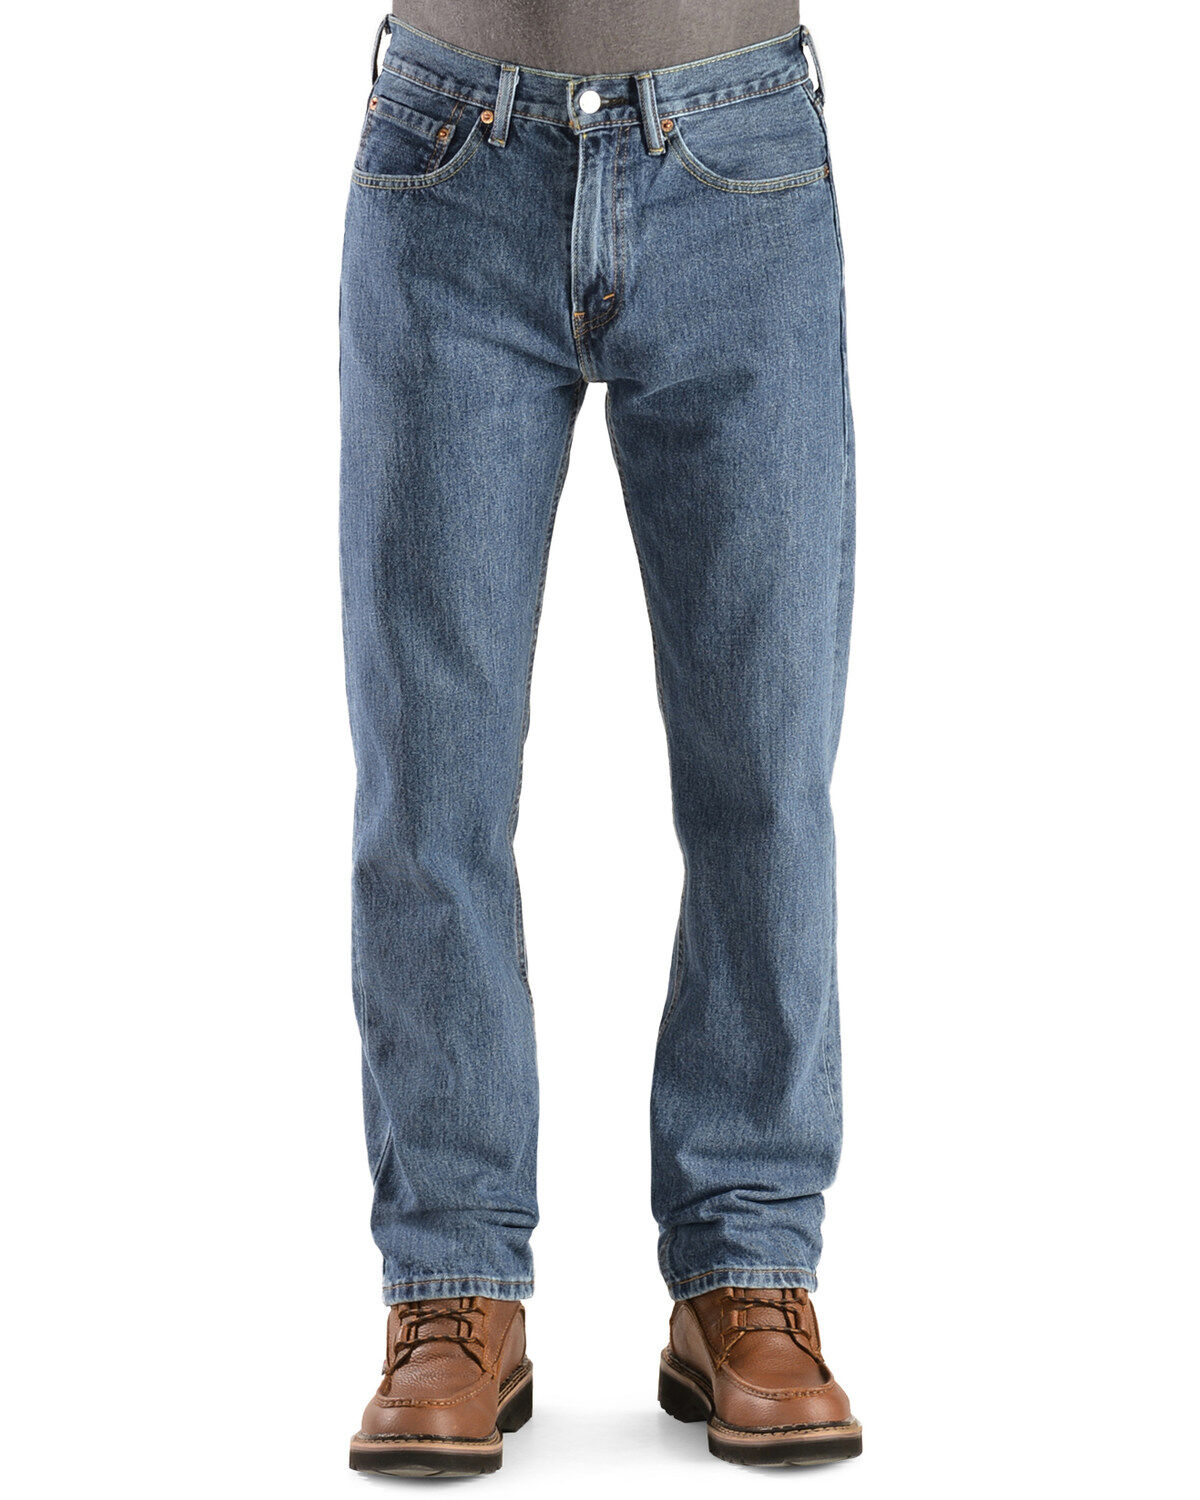 men's levi 505 jeans on sale